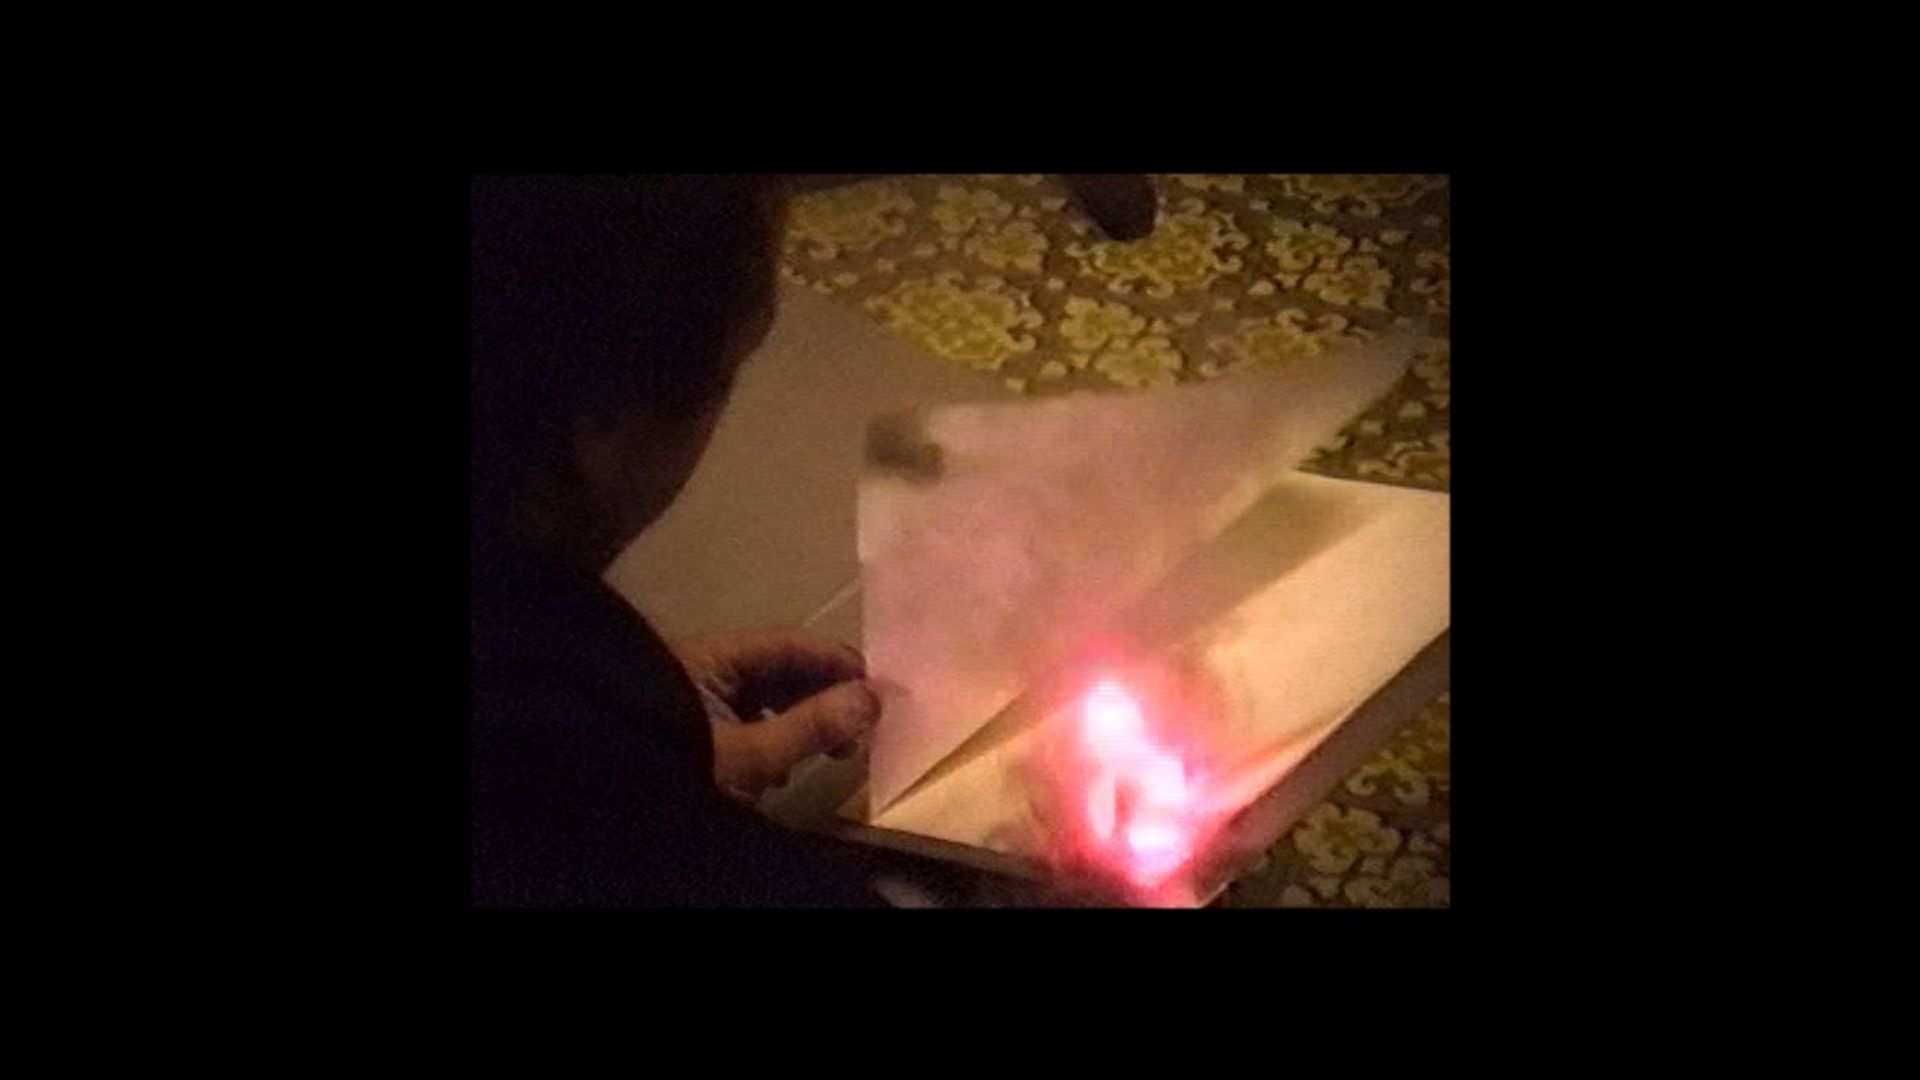 Archivmaterial: Seitenansicht einer nicht erkennbaren Person, die eine Seite eines brennendes Buches umblättert.